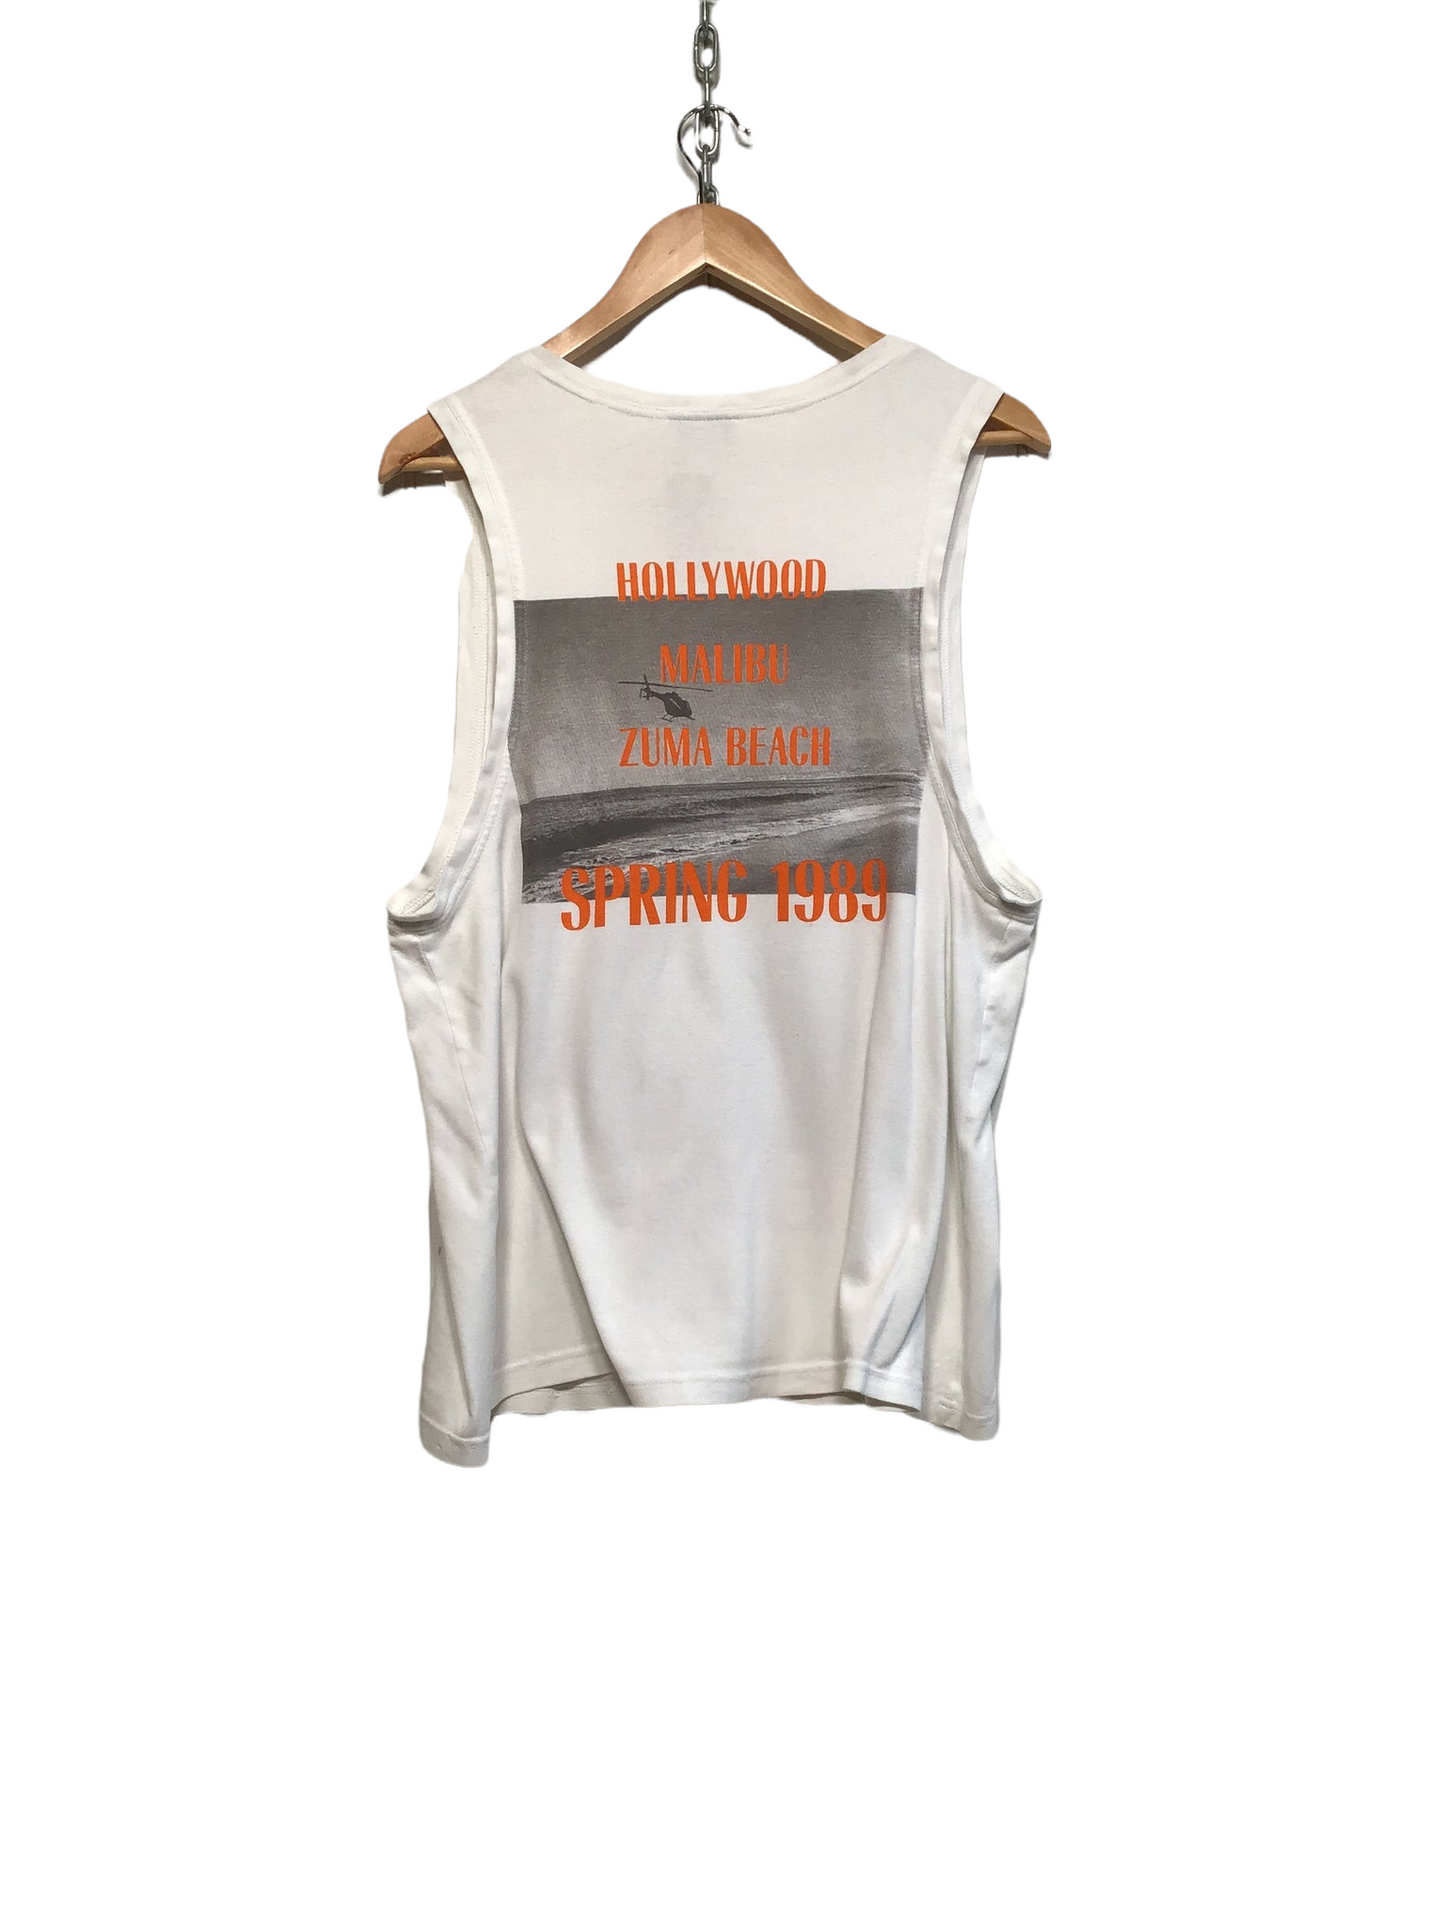 Gianni Versace 1989 Vest (Size M)